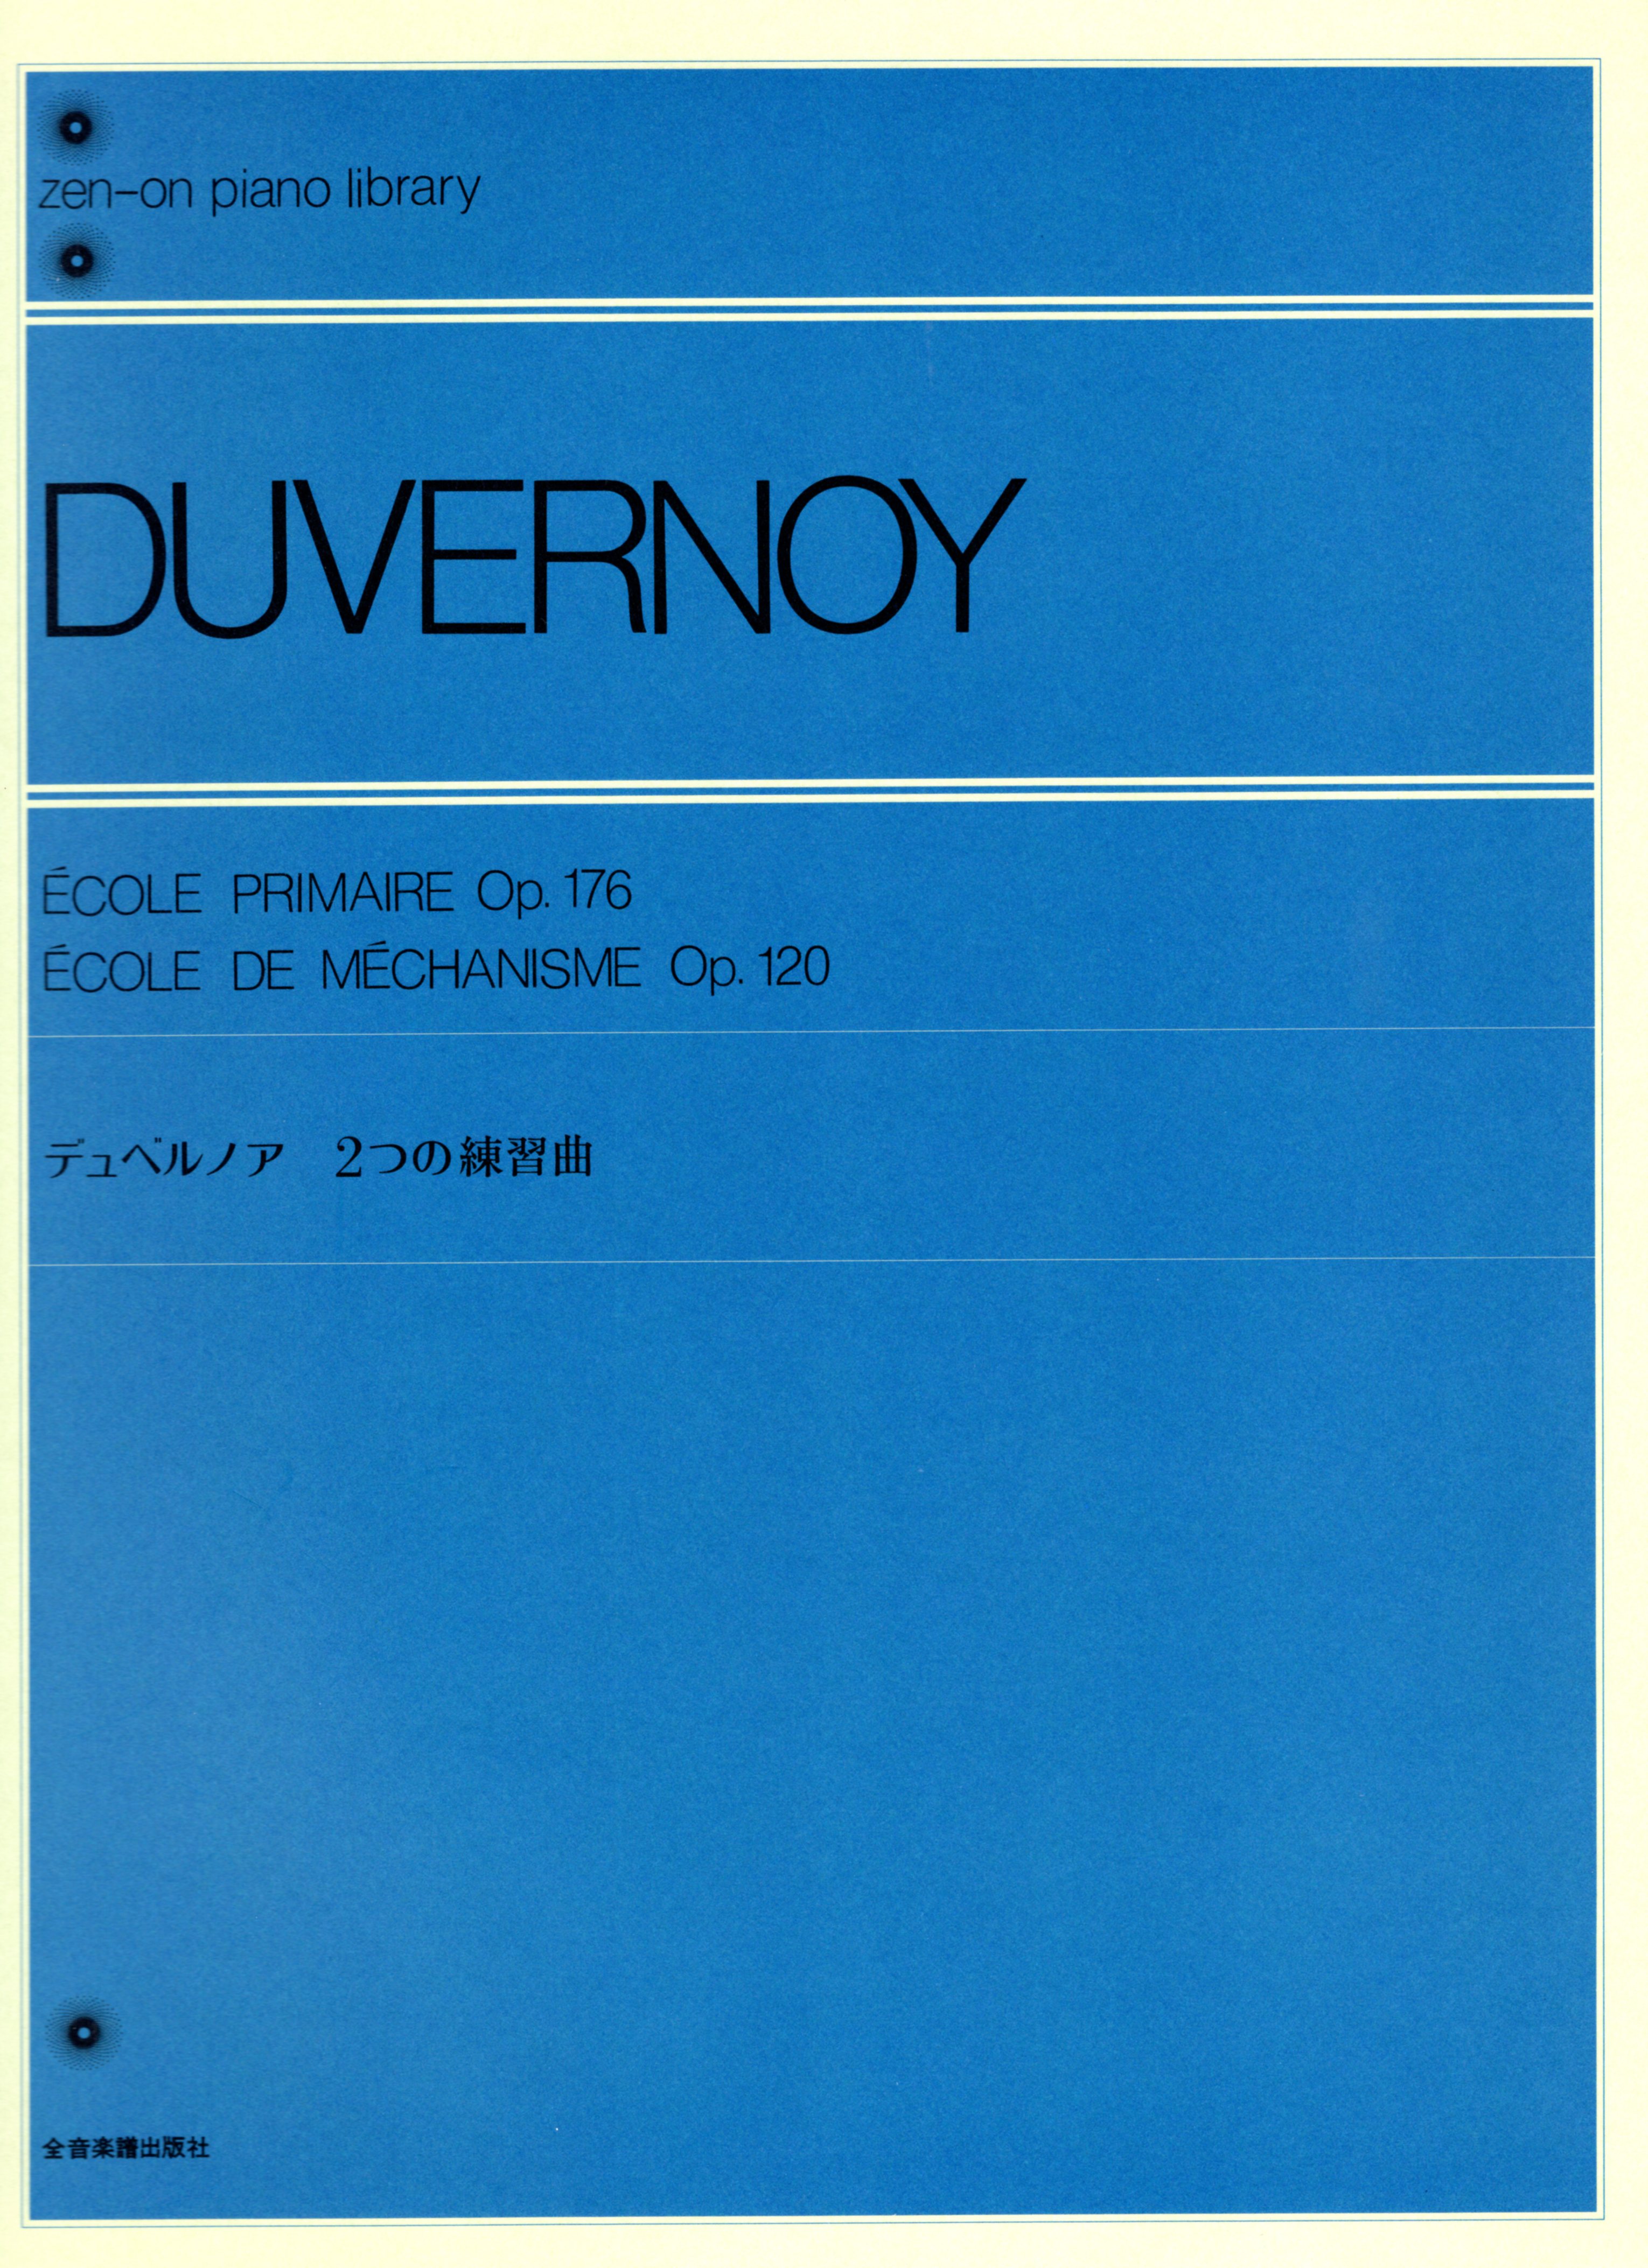 【獨奏鋼琴樂譜】 杜維諾依 練習曲作品176、120  DUVERNOY Ecole Primaire Op.176 Ecole de Mechanisme Op.120